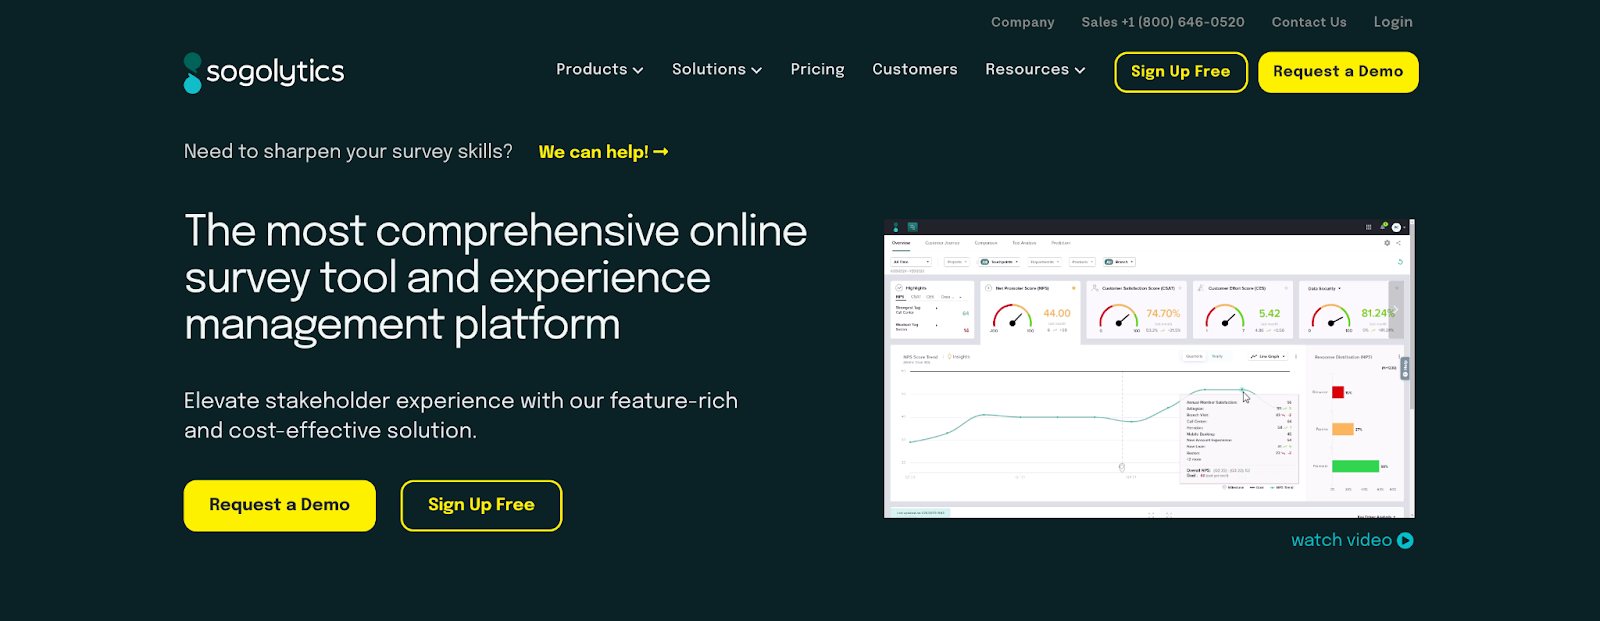 Customer feedback tools, Sogolytics’ homepage]